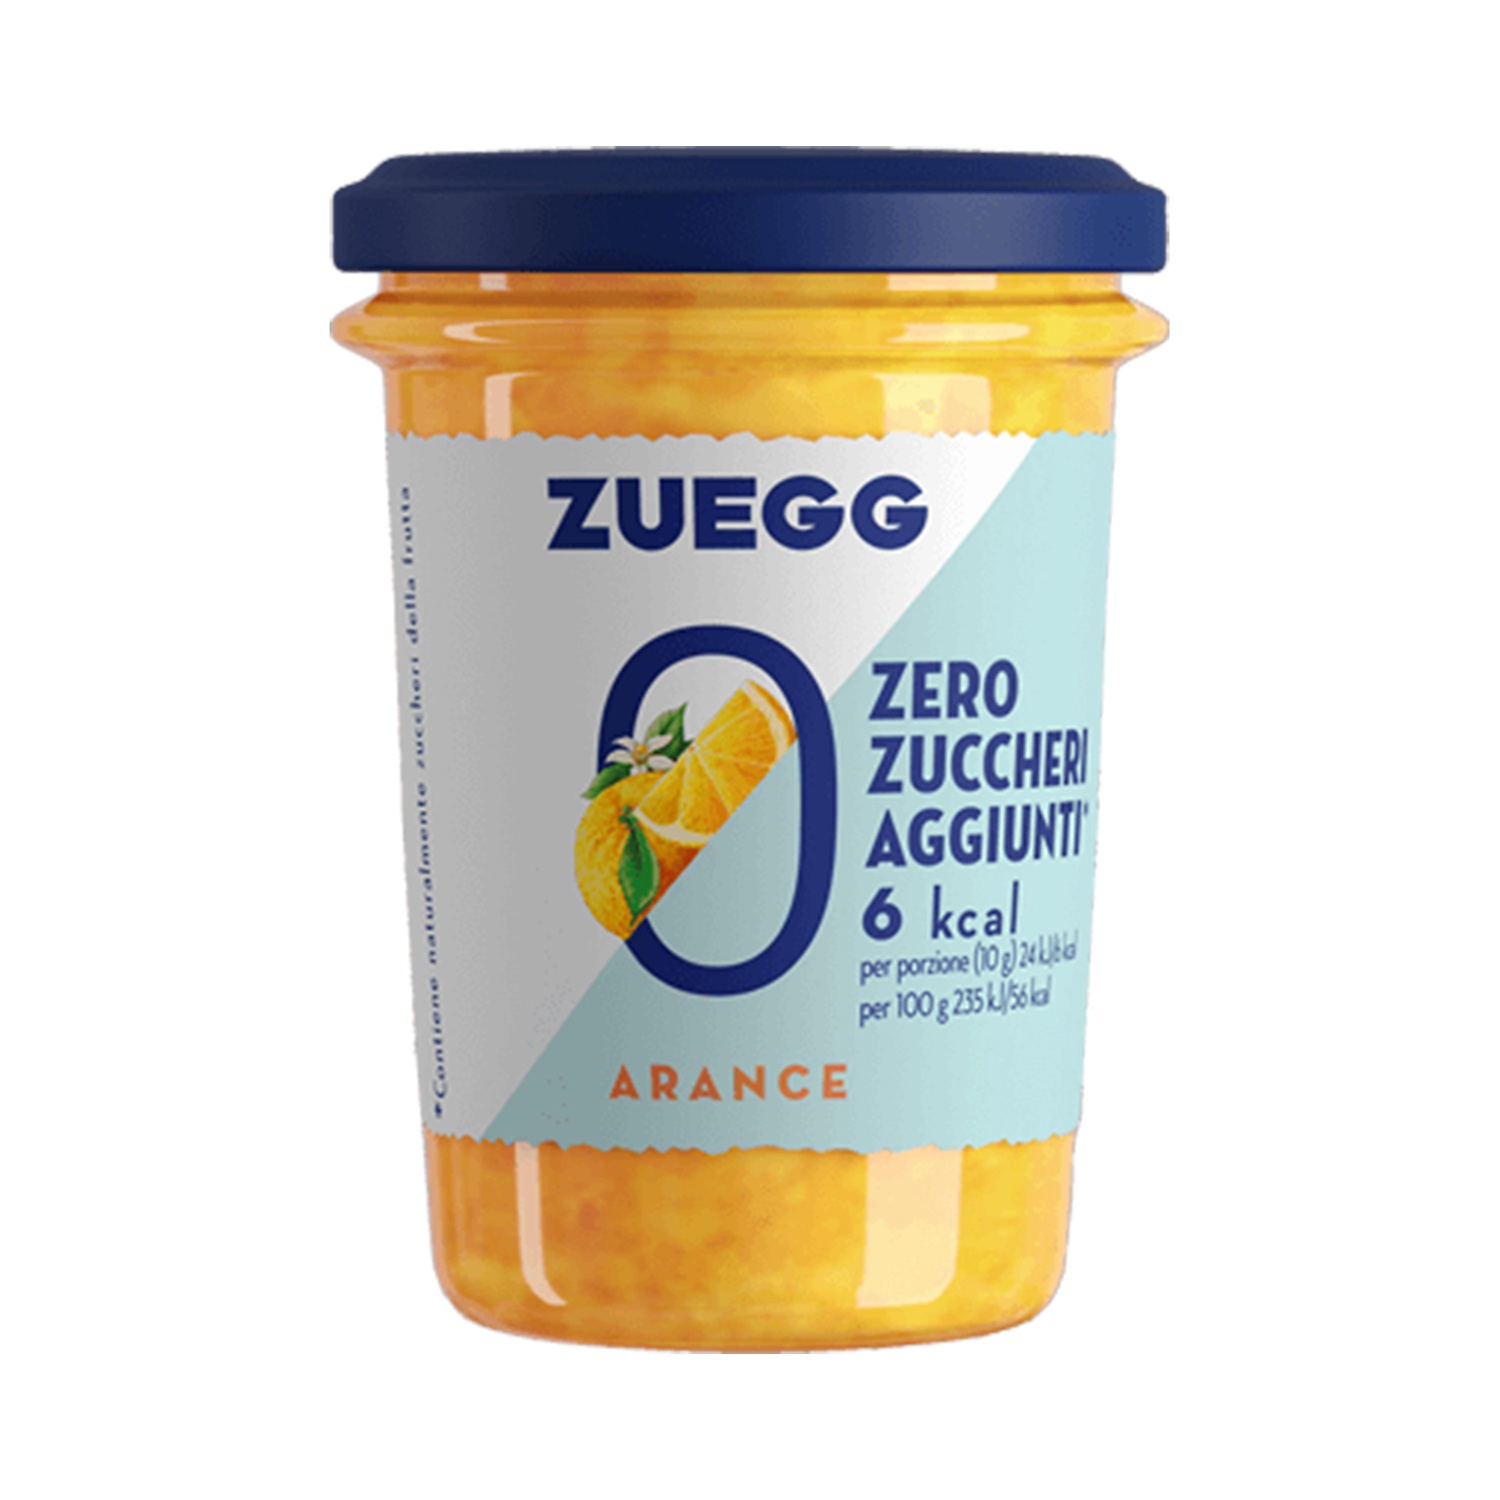 ZUEGG Confettura Zero Zuccheri aggiunti alle arance